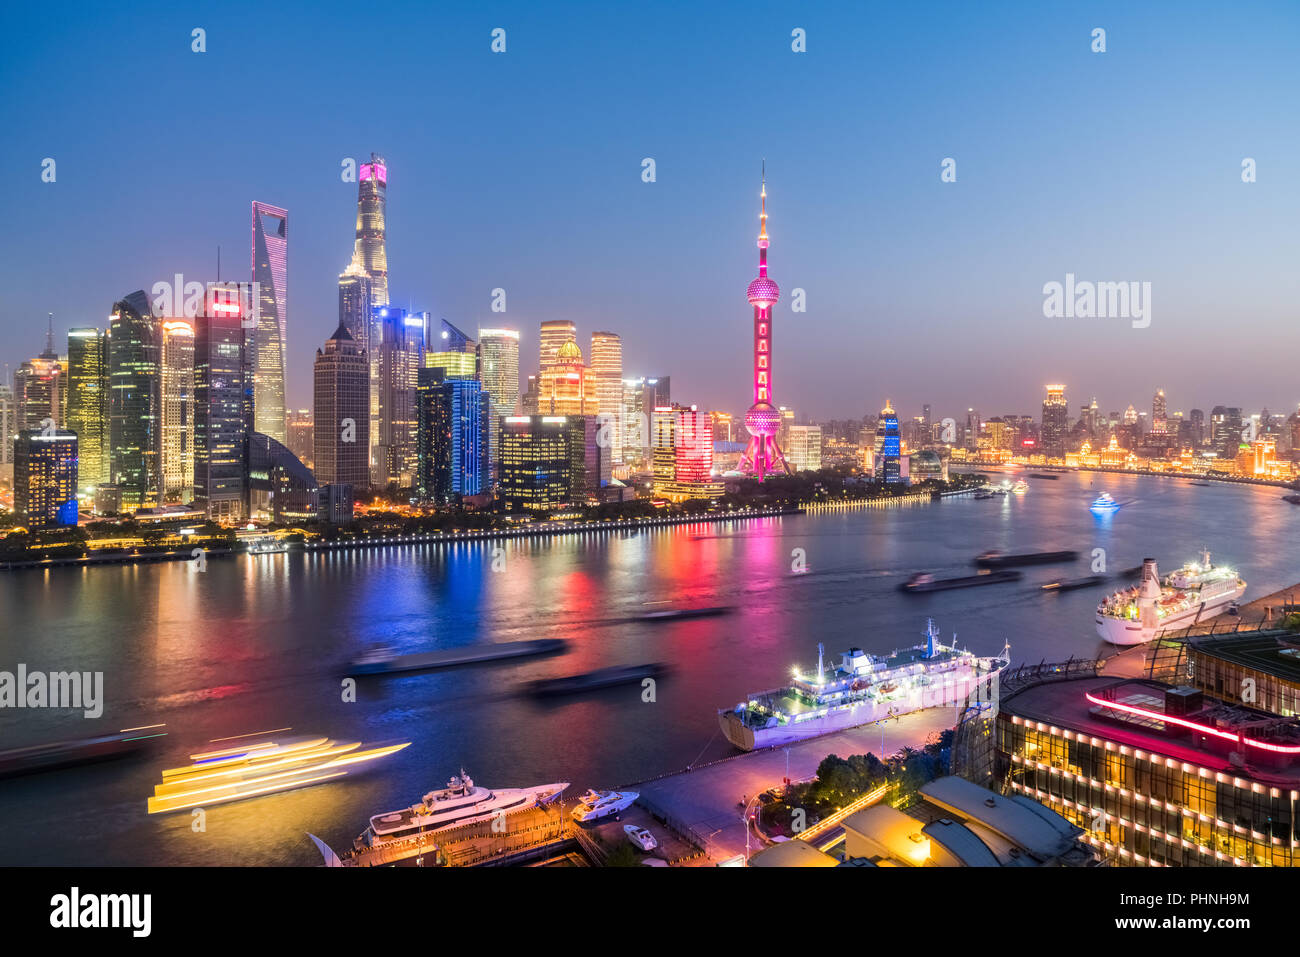 night view of shanghai skyline Stock Photo